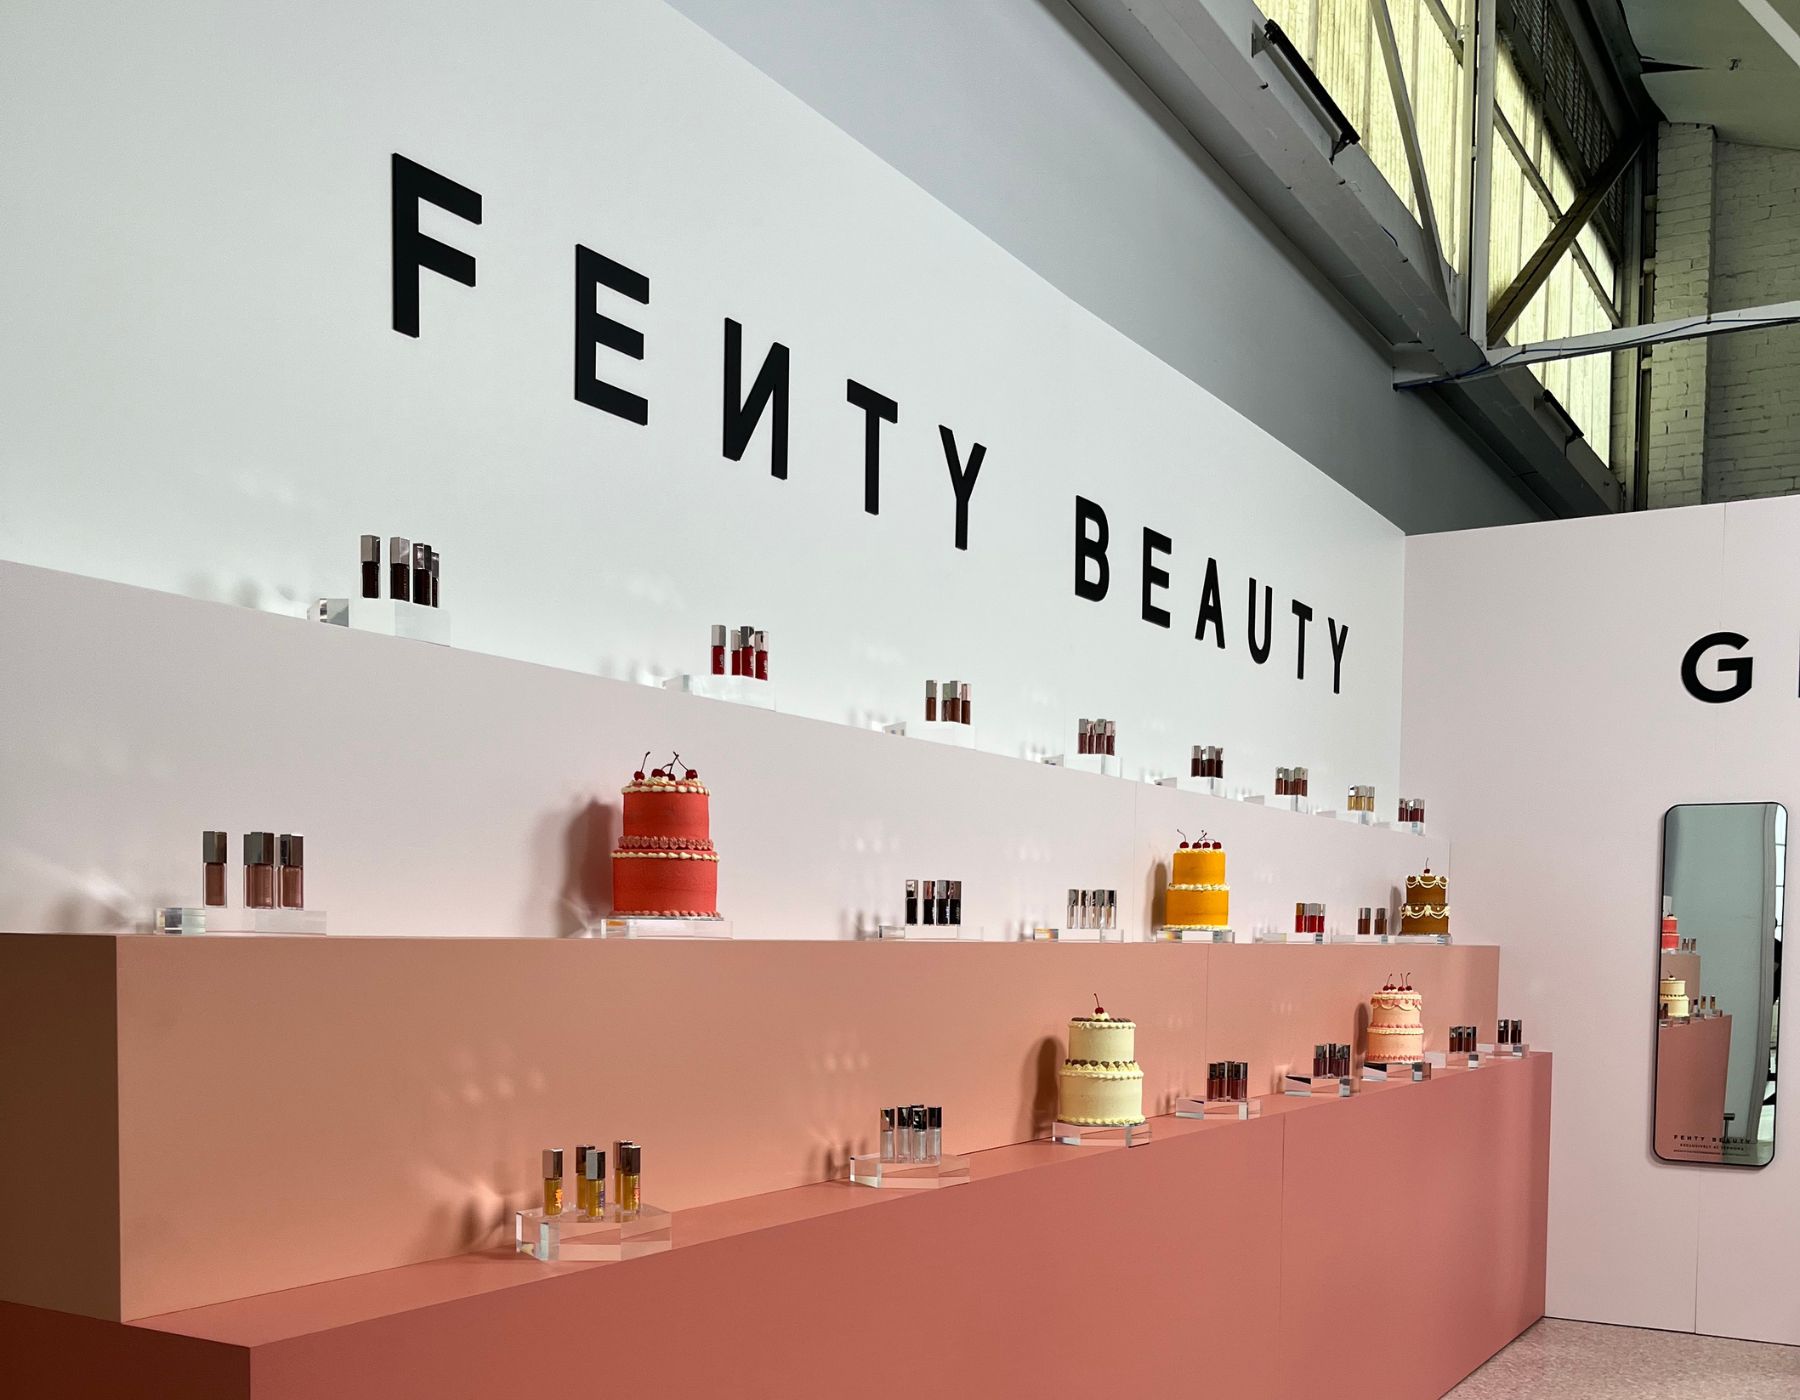 Step Inside The World of Fenty Beauty - En Route